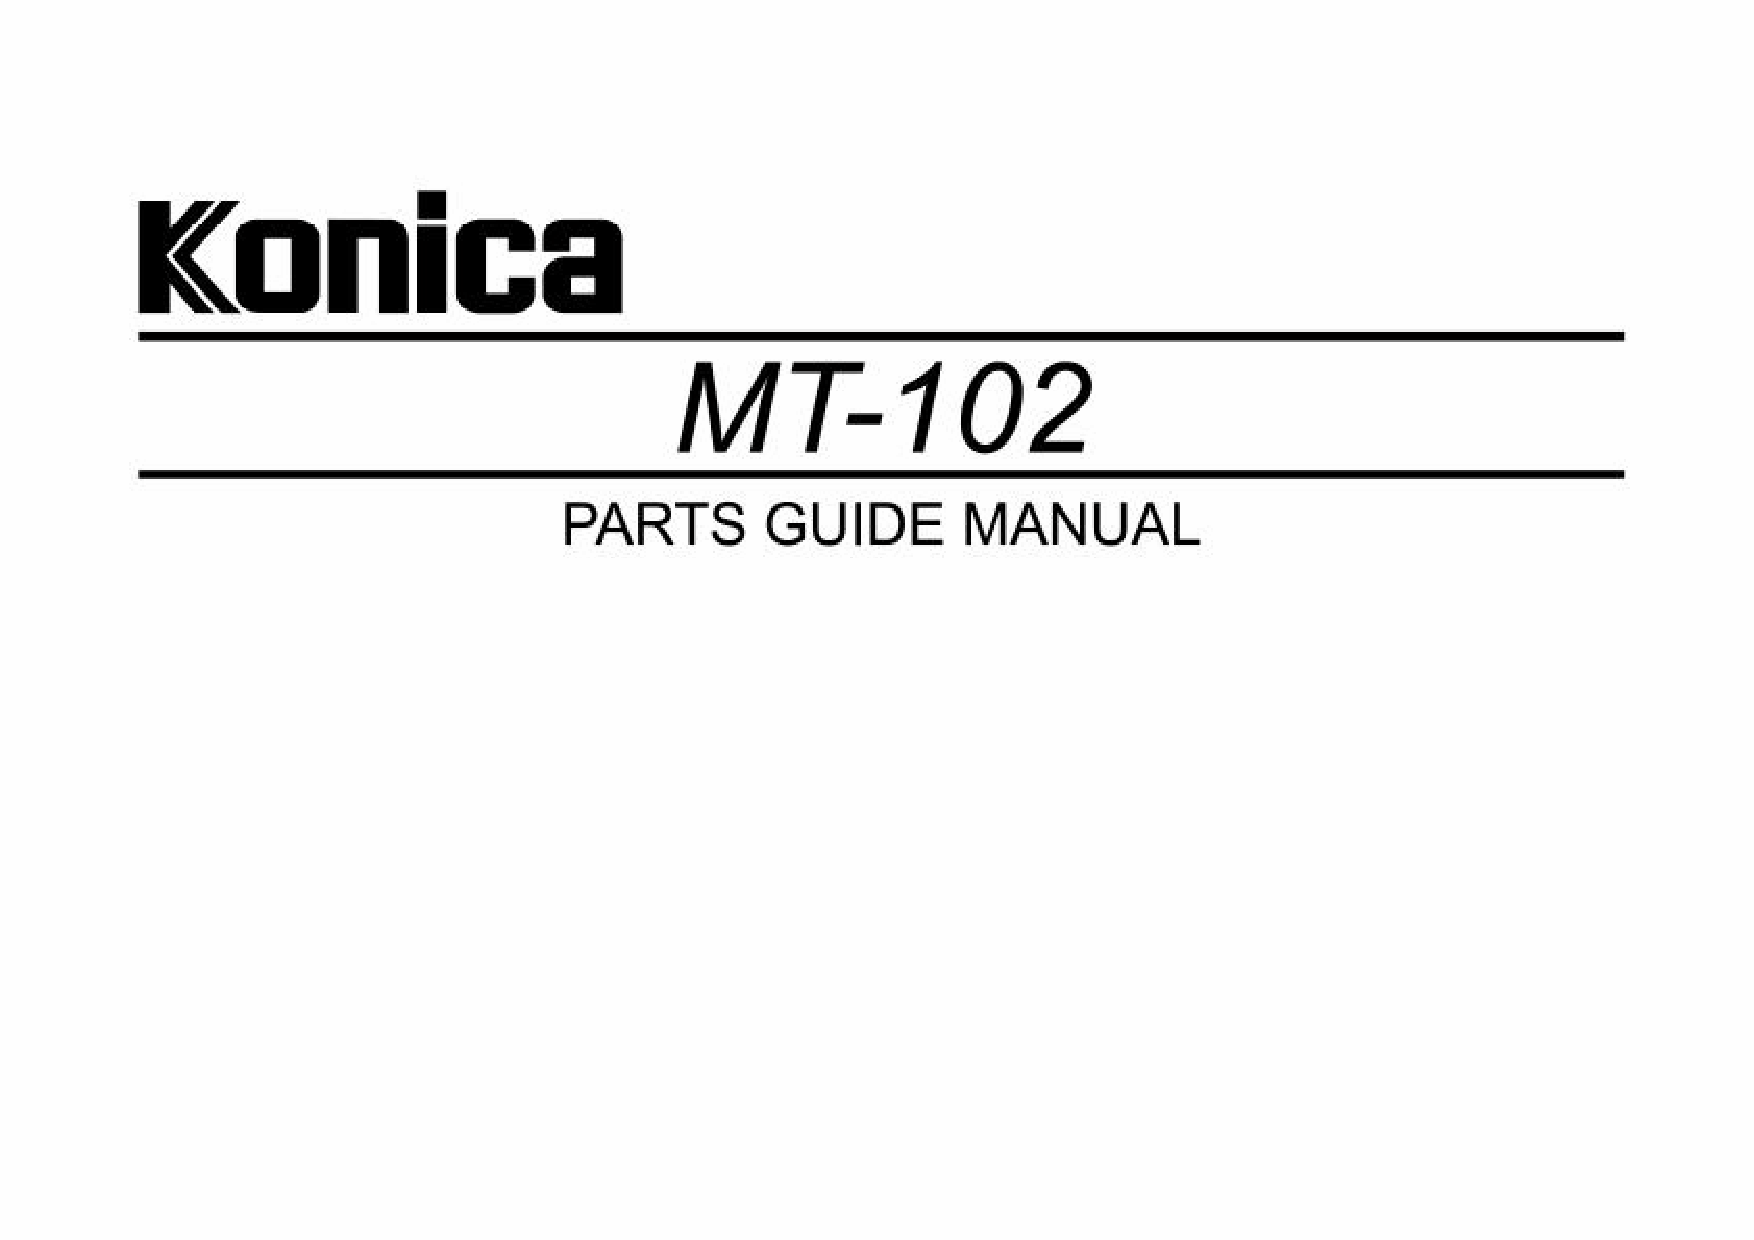 Konica-Minolta Options MT-102 Parts Manual-1